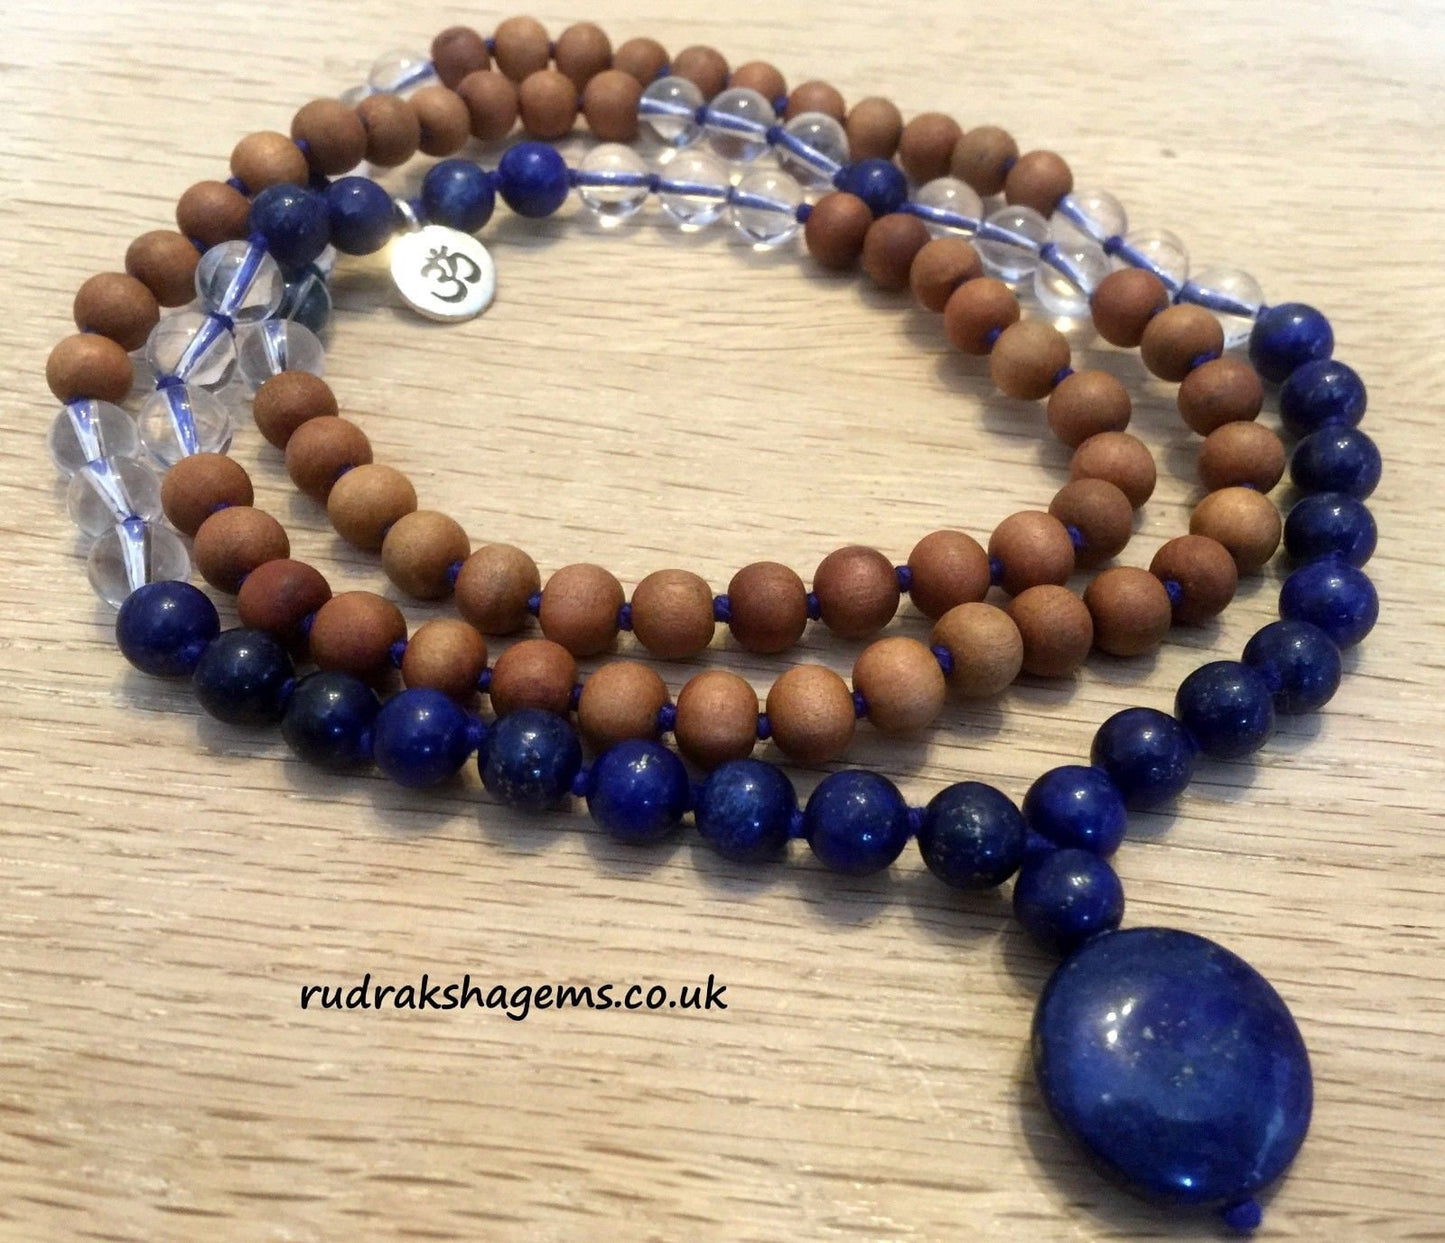 Sandalwood with Lapis Lazuli Japa Mala Crystal 108 beads OM mala with Lapis pendant purified & blessed Unisex Necklace Mens Women Japa Yoga